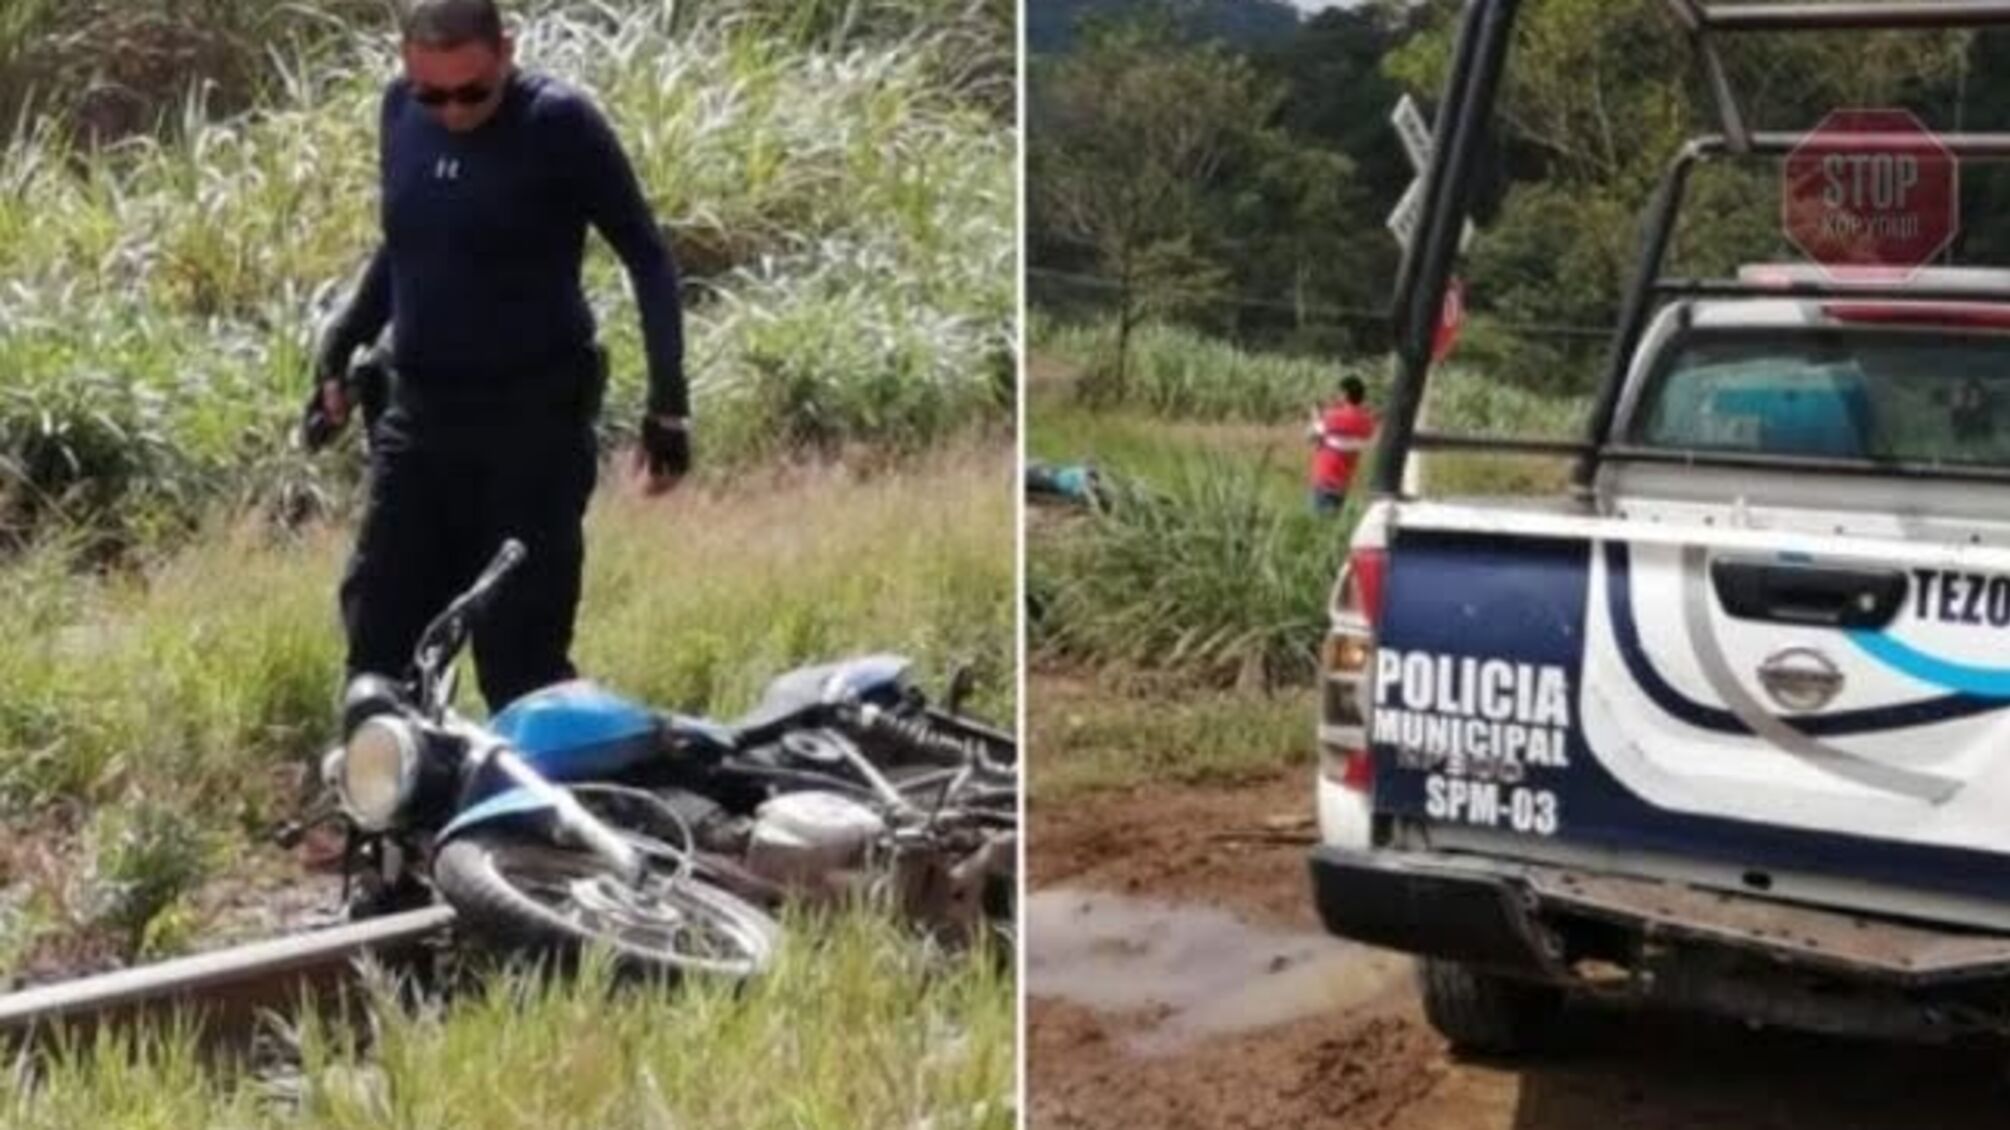 У Мексиці знайшли тіло журналіста без голови 